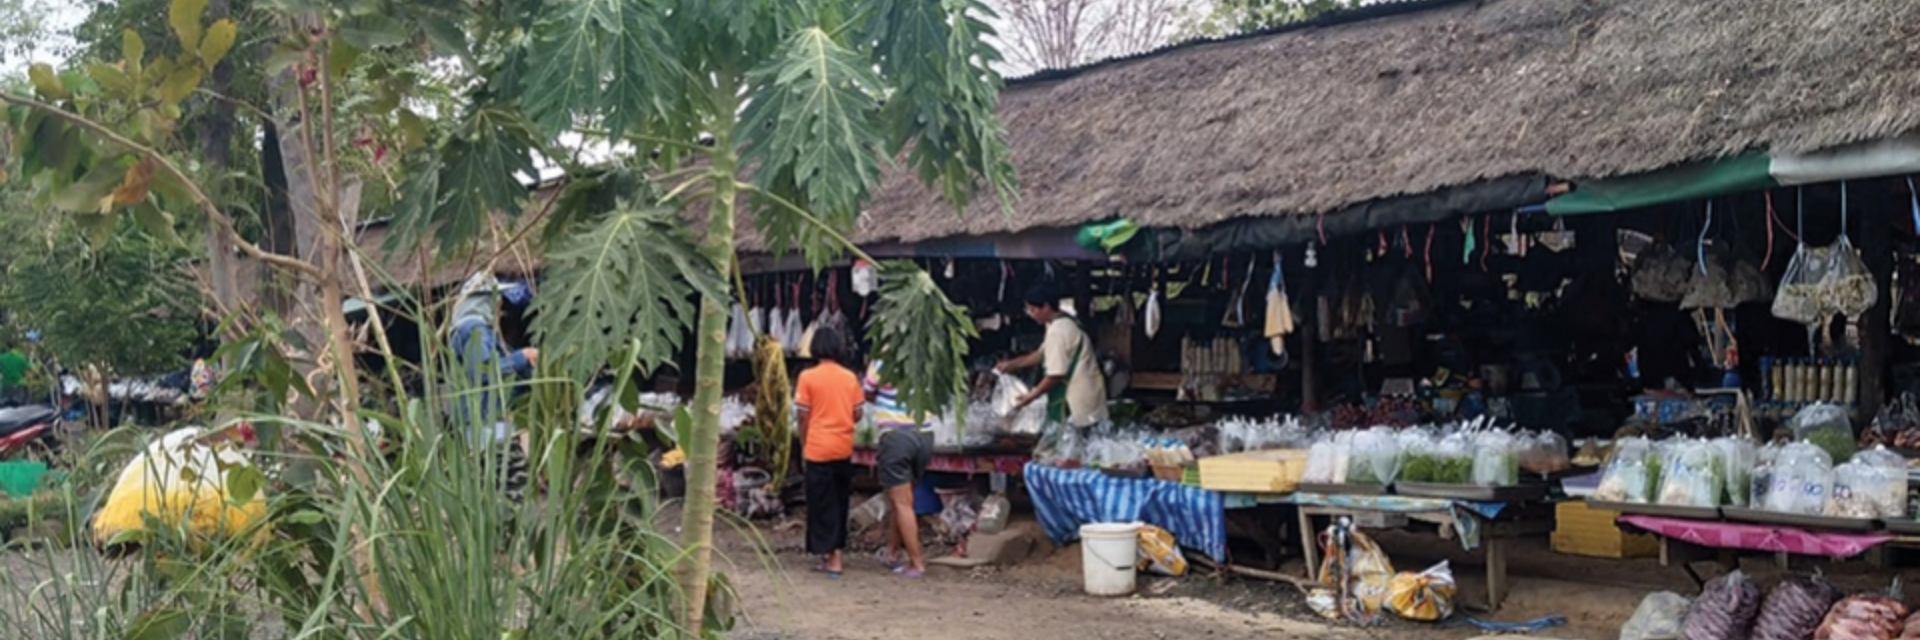 แวะซื้อของป่า อาหารถิ่น ณ ตลาดวิถีชุมชนโคกอีโด่ย จ.บุรีรัมย์